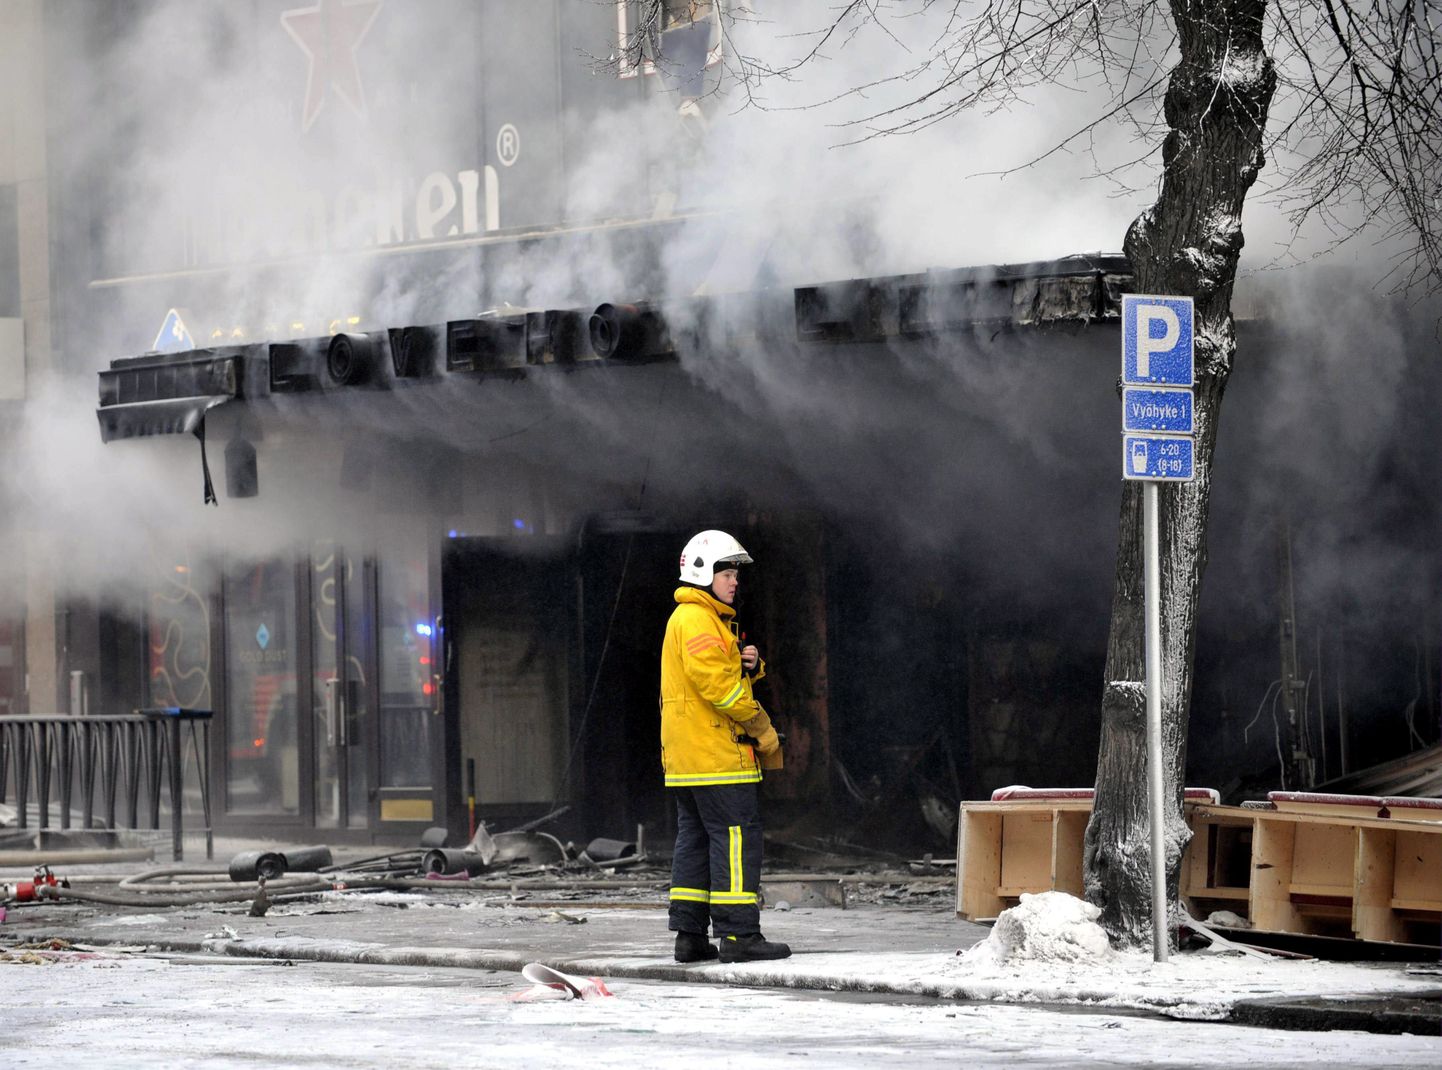 Soome tuletõrjuja Tampere kesklinnas põlenud maja ees.